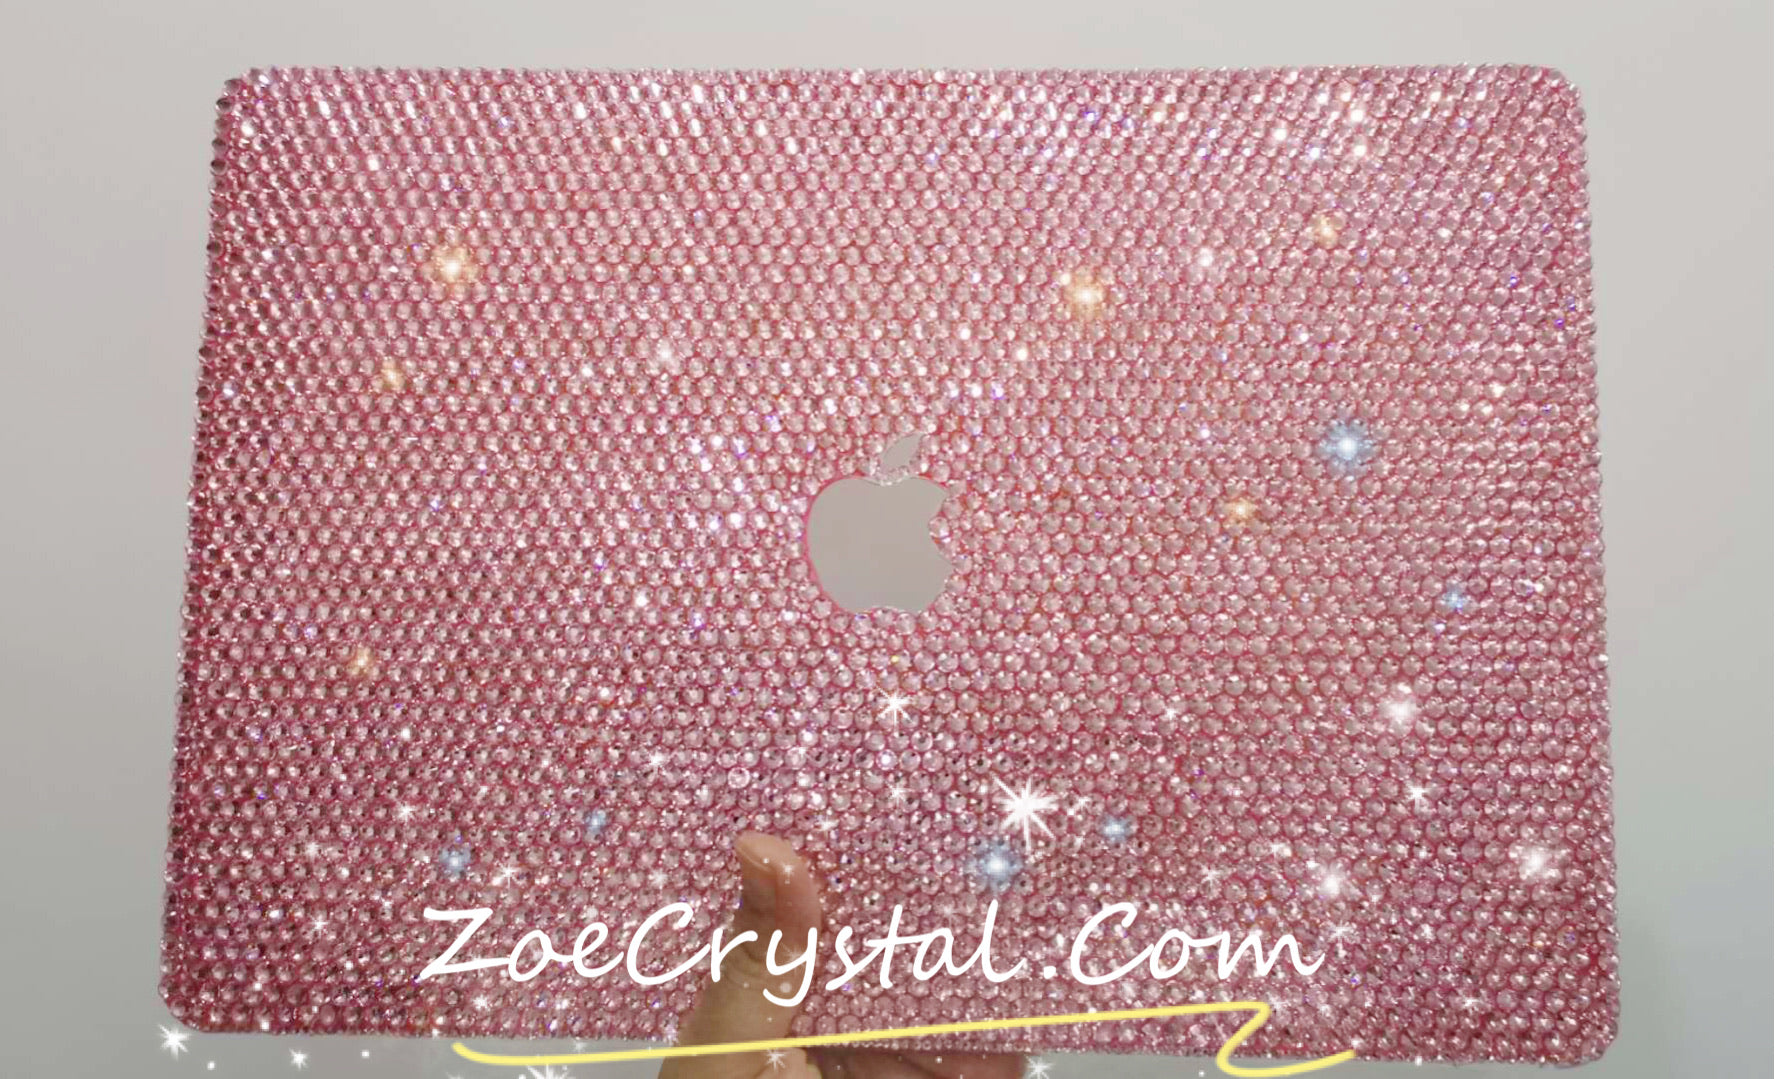 Macbook Rose gold Crystal Case / light pink